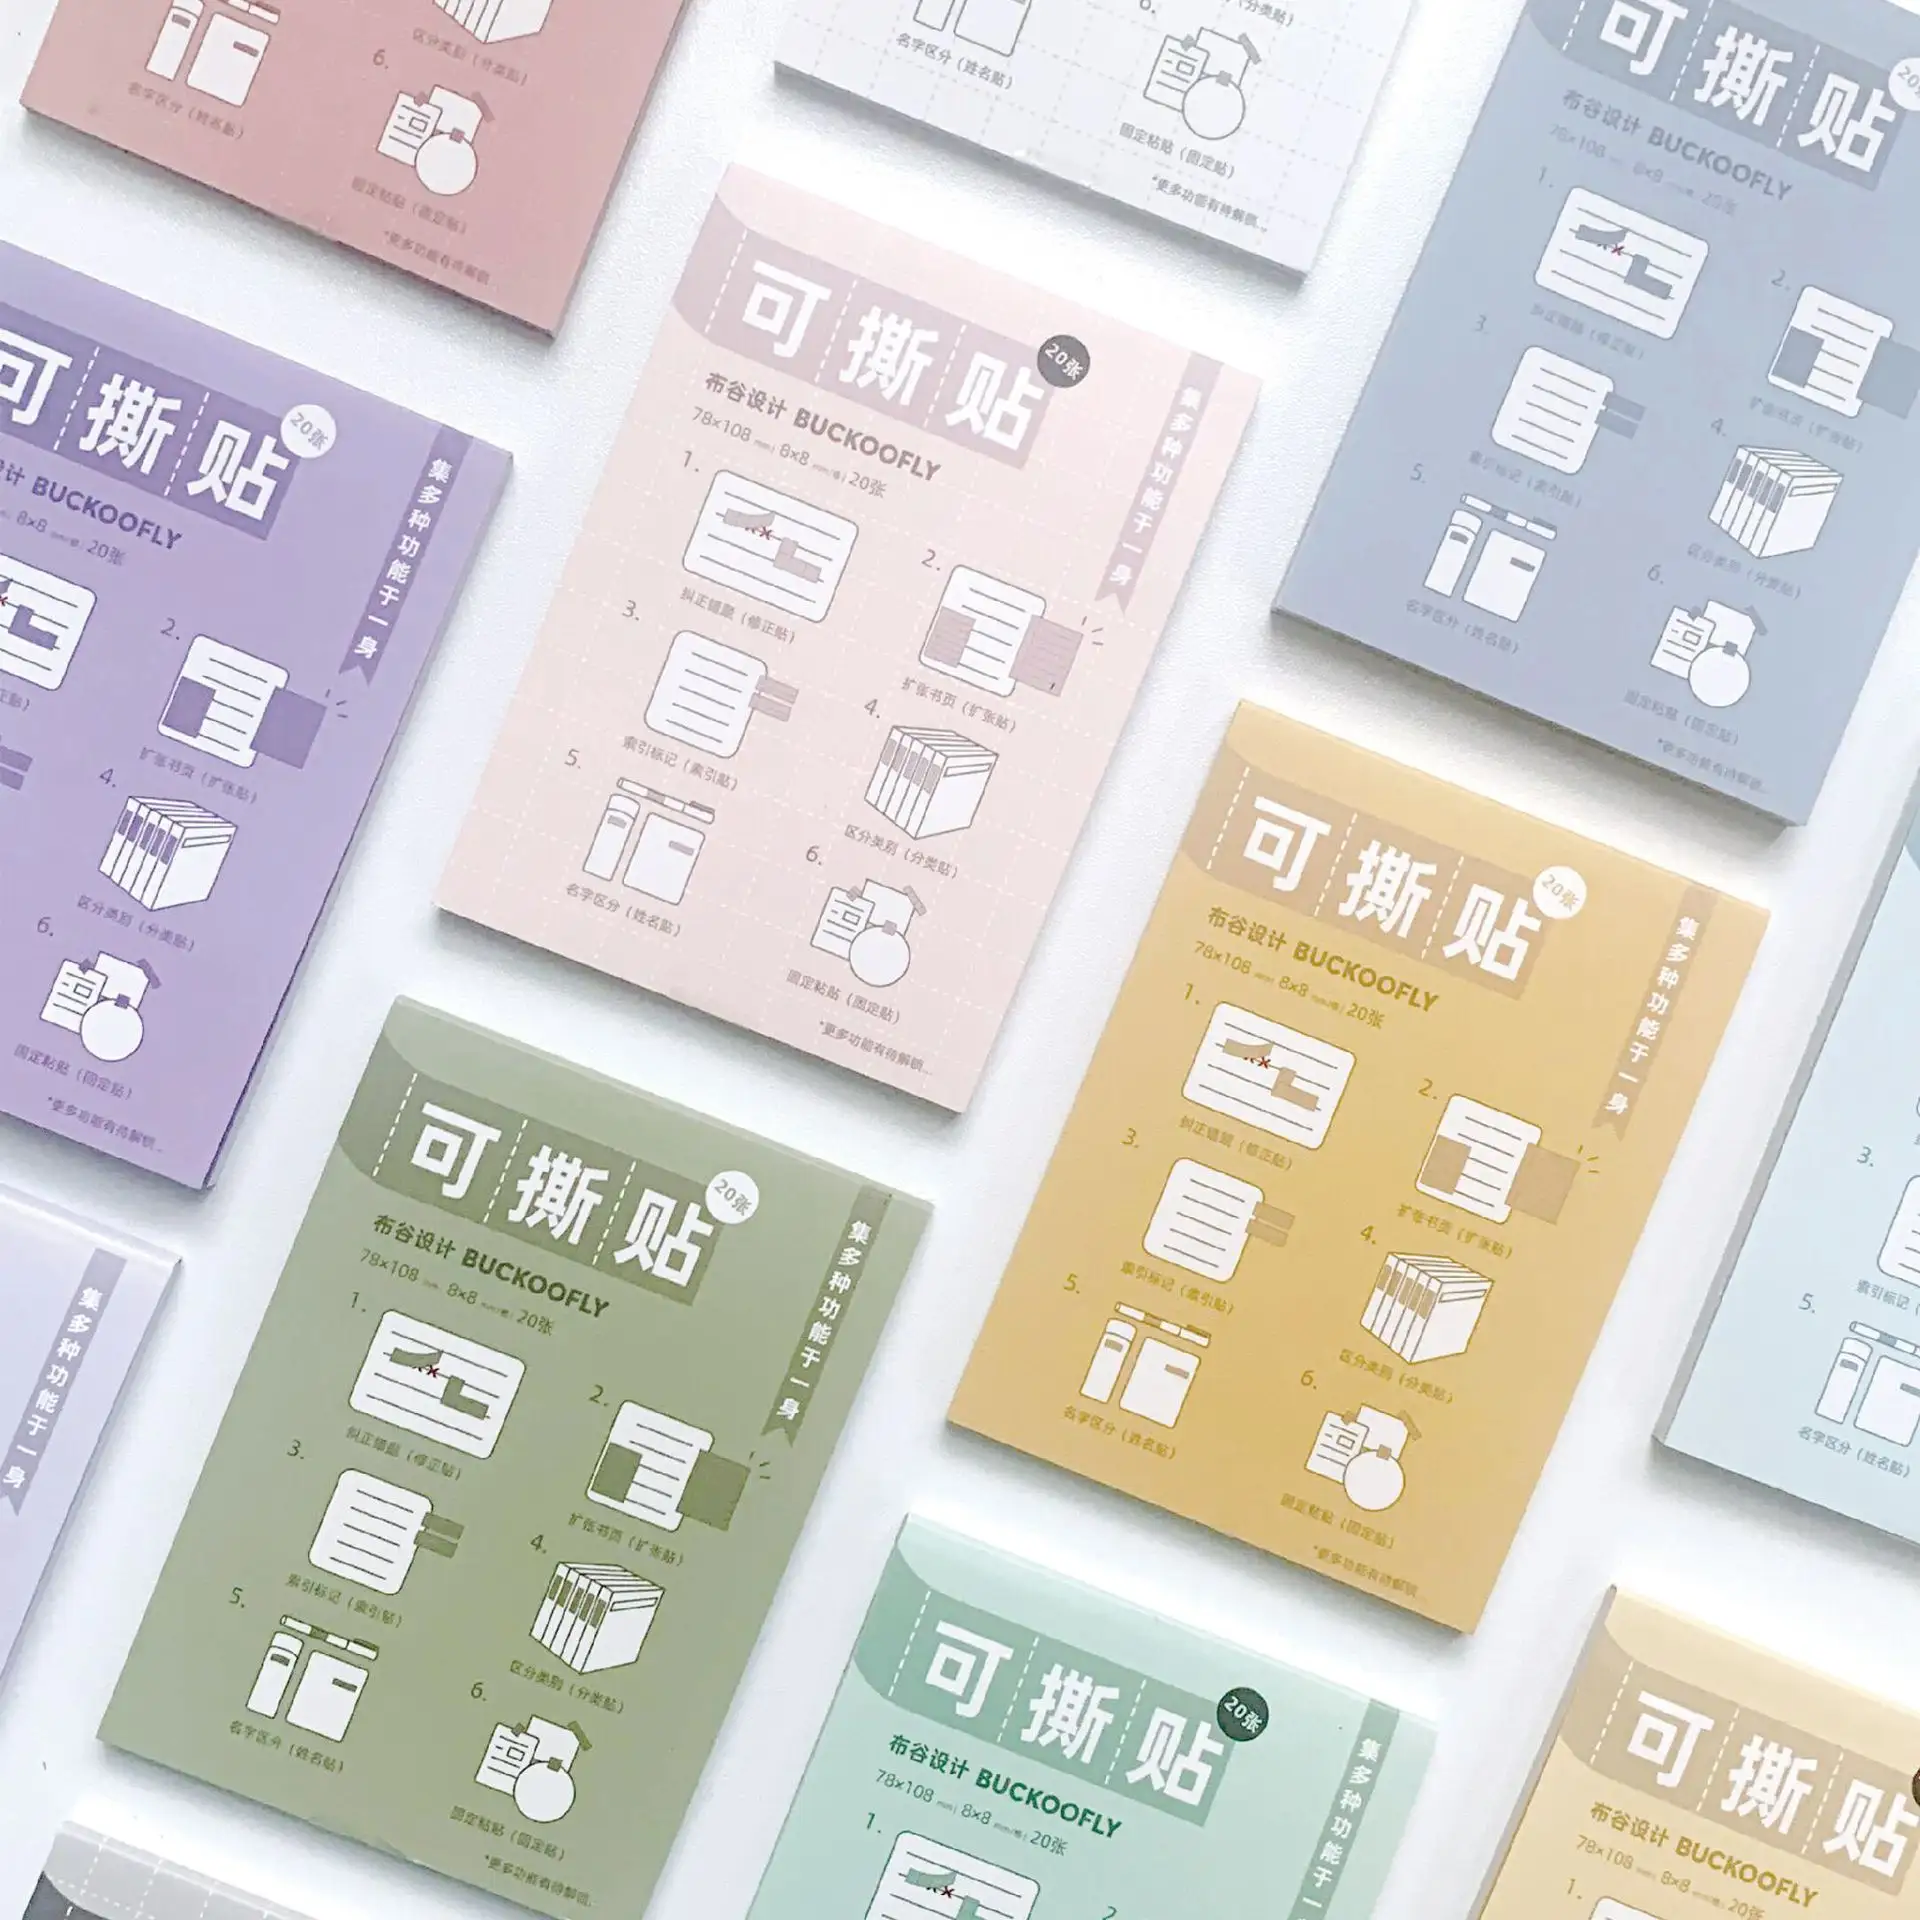 Buckoofly design creativo stazionario kawaii memo pad schede indice full stick strappo 12 colori estetico morandi note adesive